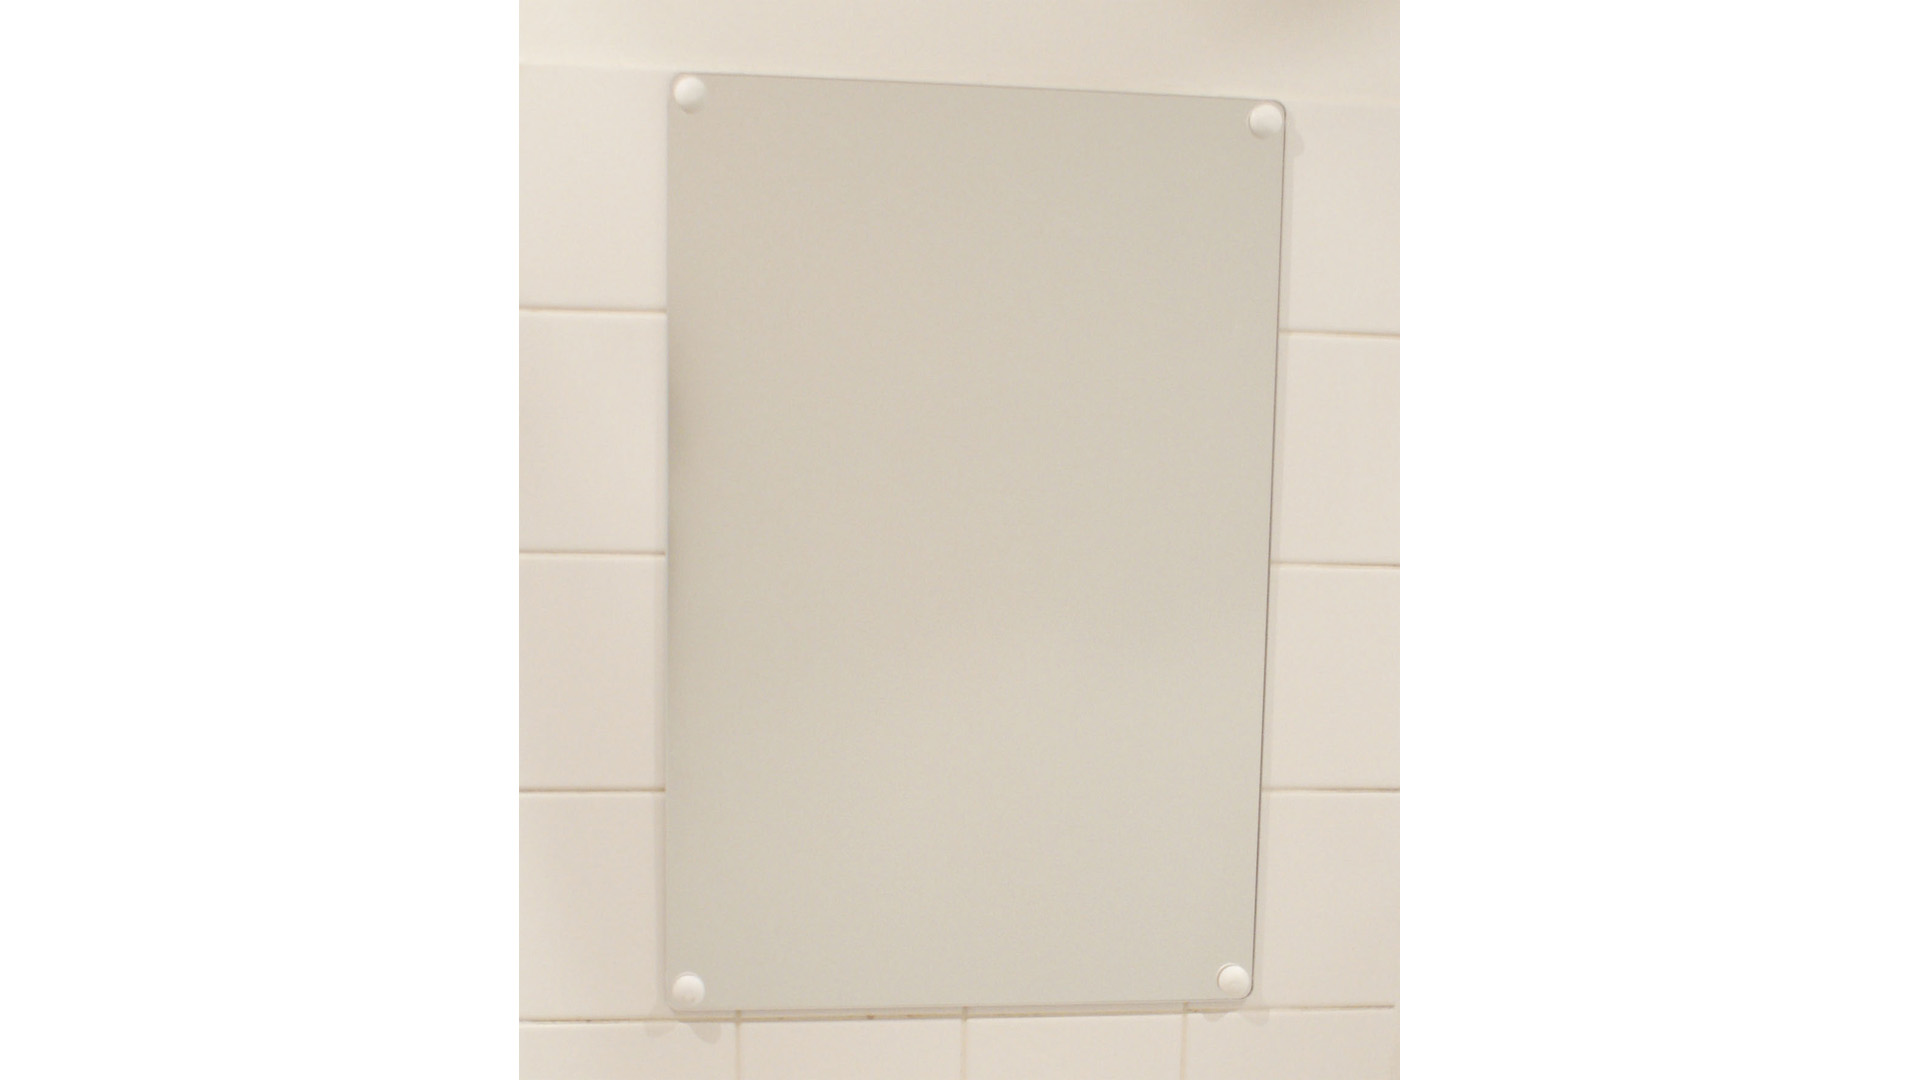 Flachspiegel ohne Rahmen, Spiegelfläche BxH 400x1200 mm, Gewicht 6 kg